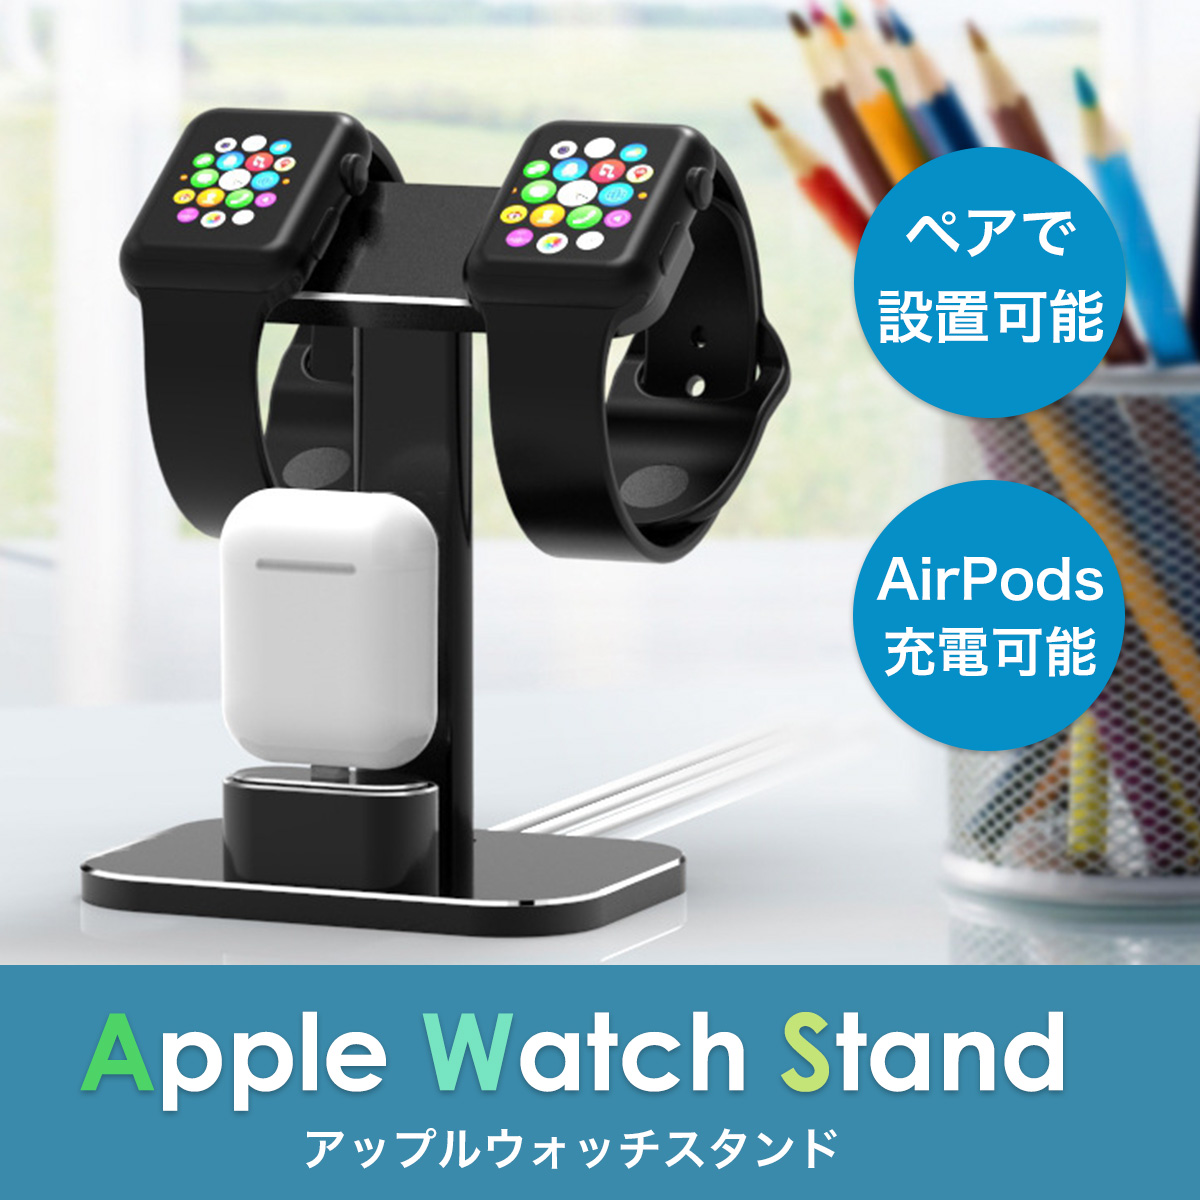 apple watch アップルウォッチ 充電スタンド スタンド 2台 アルミ ペア カップル AirPods 2in1 おしゃれ ブラック